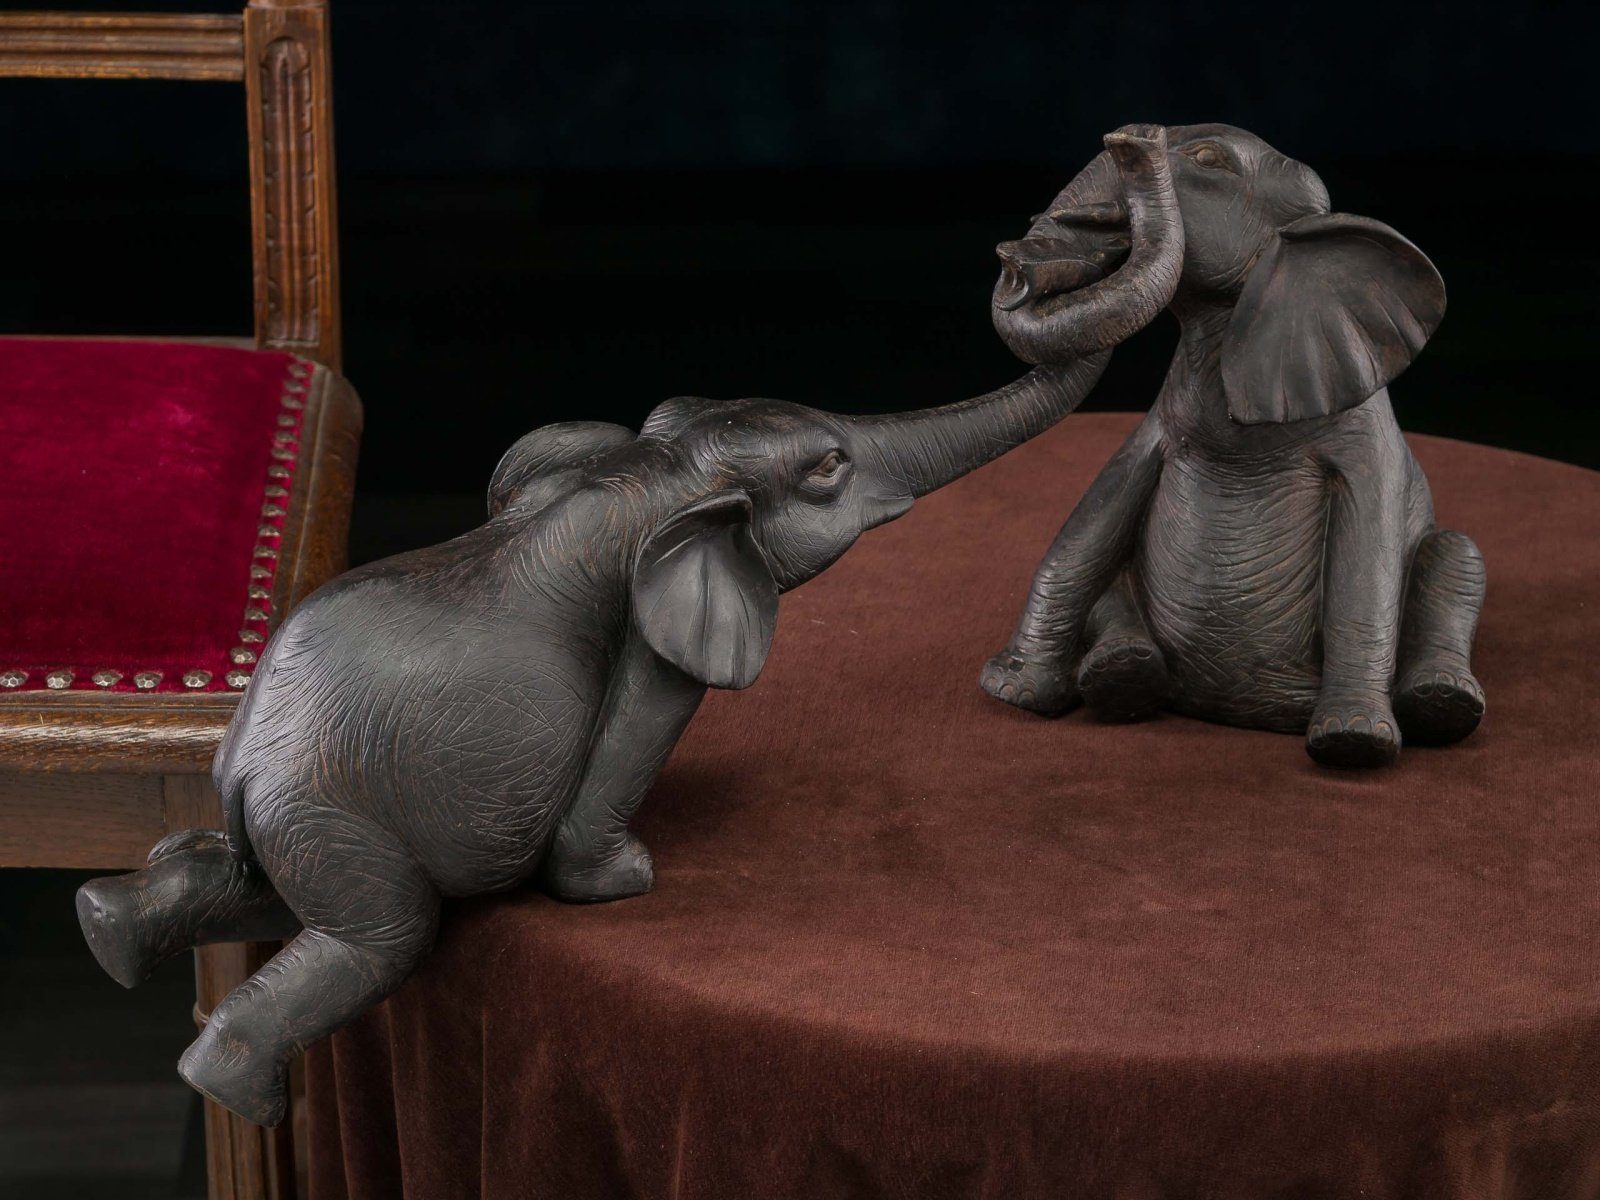 Aubaho Dekofigur Elefantenpaar sculpture Skulptur aus Elefant Figur elephant Kunstharz